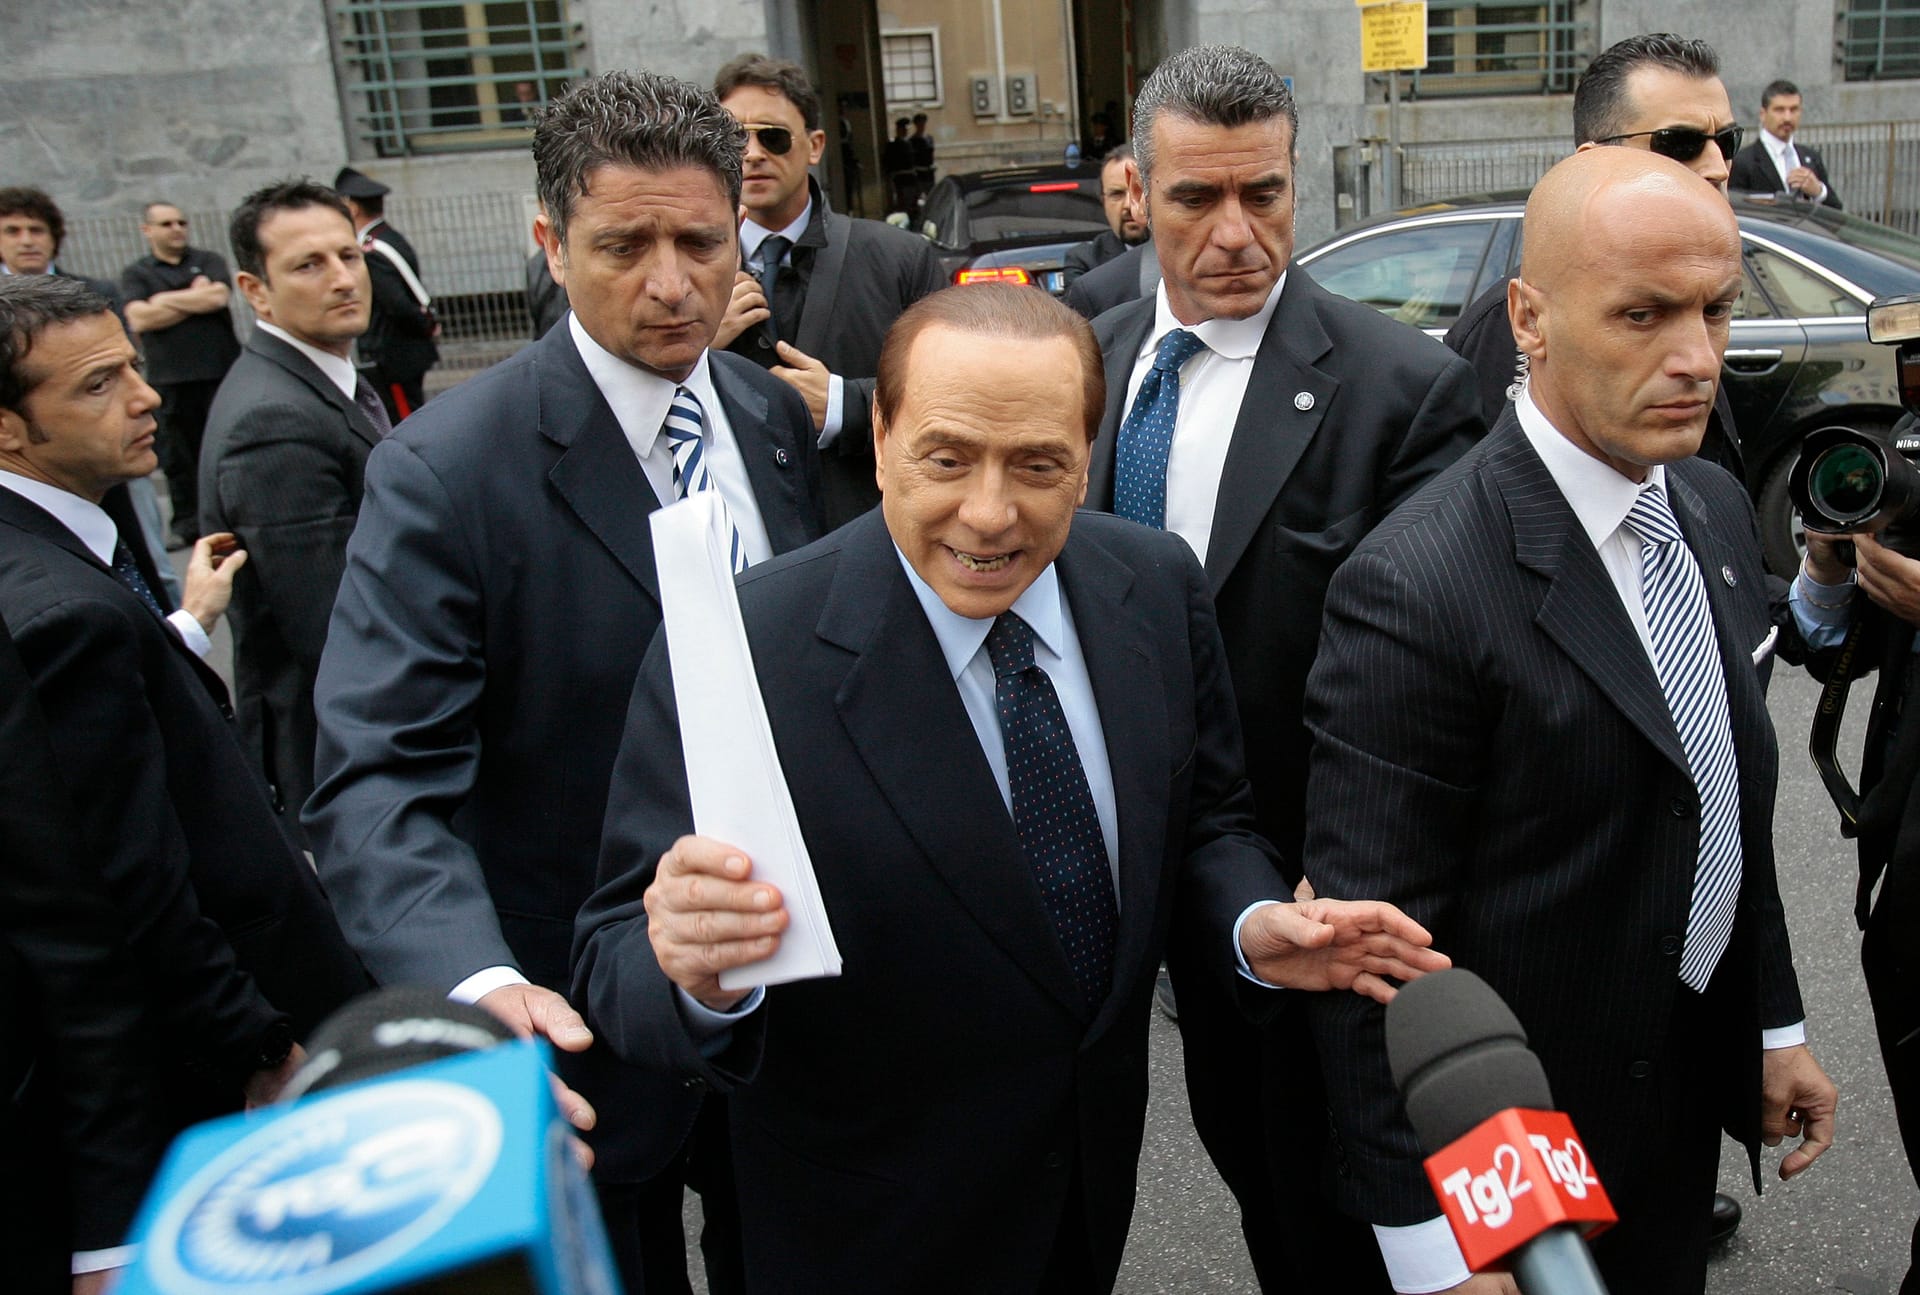 In etlichen Fällen wurde gegen Berlusconi ermittelt. Im Zusammenhang mit den als "Bunga-Bunga" bekannt gewordenen Sexpartys musste sich Berlusconi wegen Prostitutionsvorwürfen, unter anderem mit Minderjährigen, verantworten. Eine Strafe wegen Steuerhinterziehung führte dazu, dass er 2013 aus dem Parlament ausgeschlossen wurde.